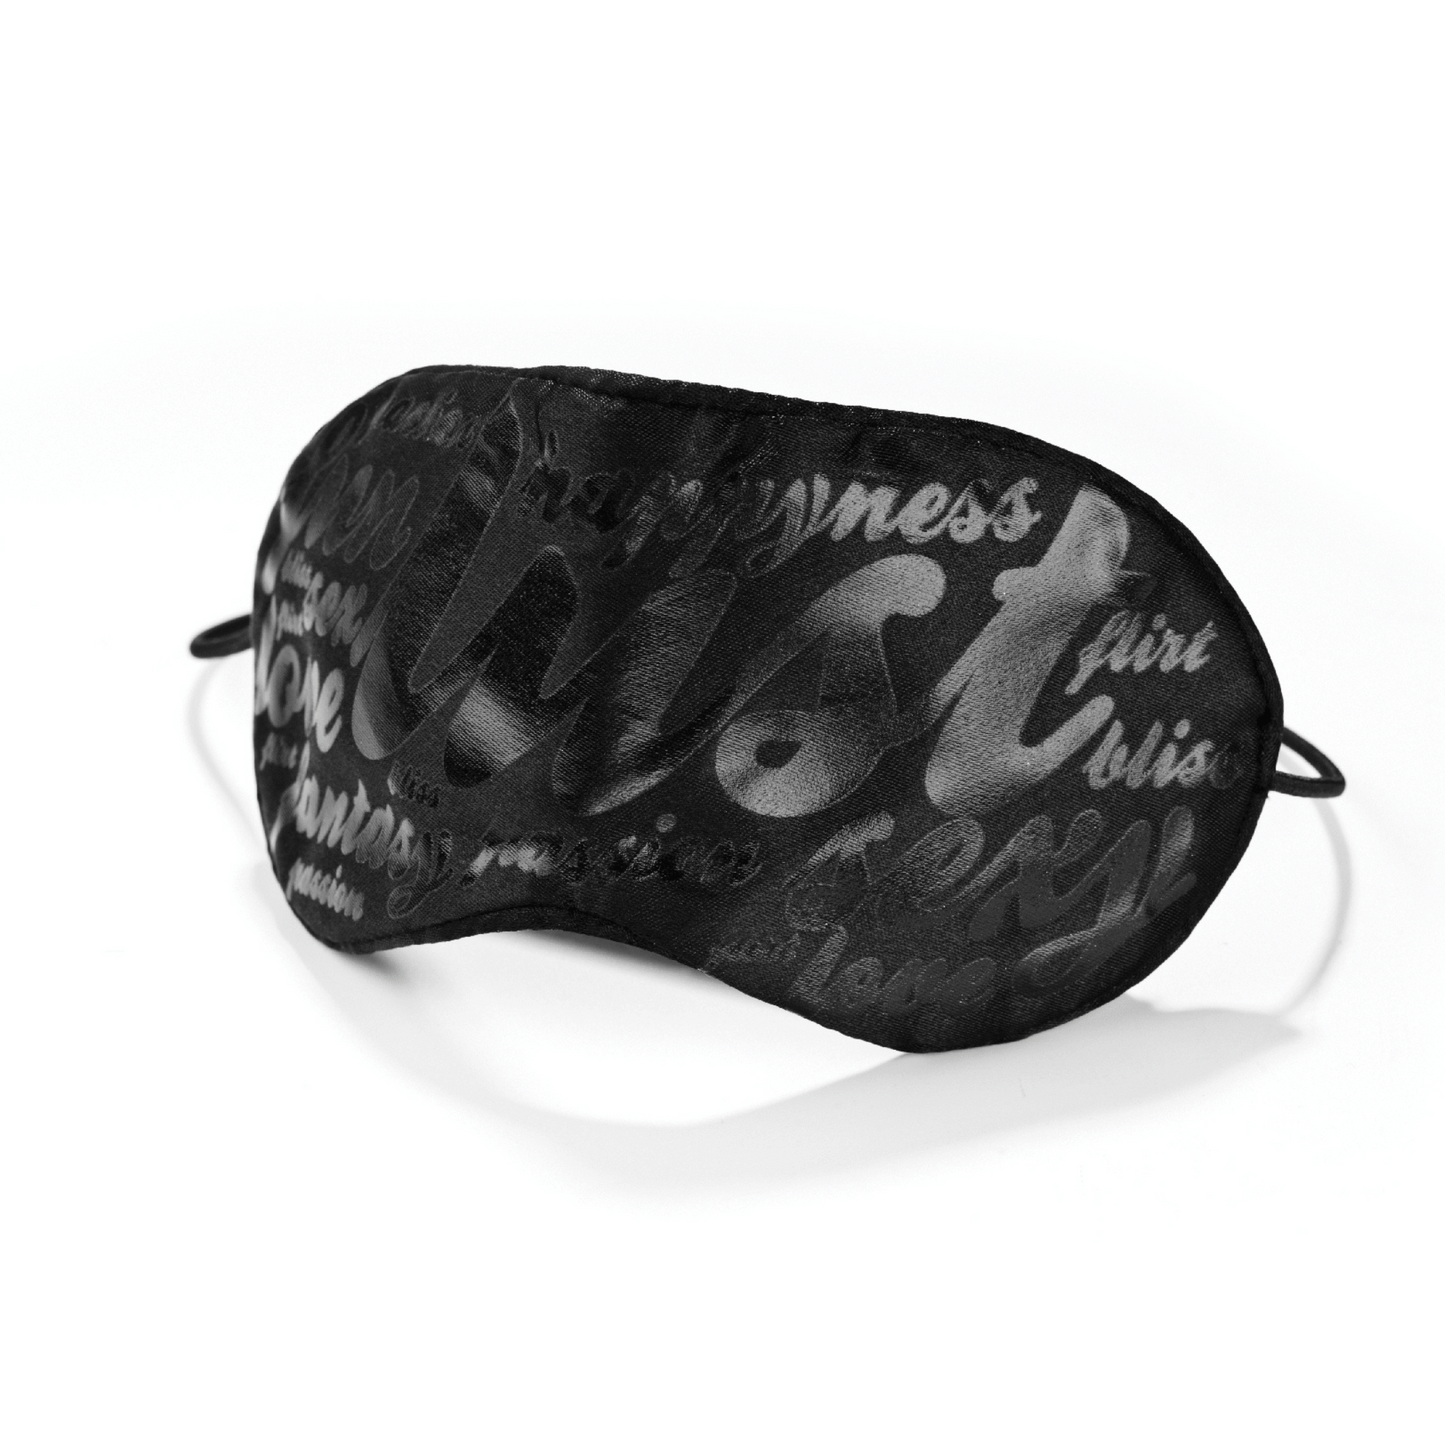 Masque noir sensuel de bijoux indiscrets avec des mots d'amour et de désir, disponible chez Oh My God'Z, conçu pour intensifier les sensations et éveiller l'imagination dans les moments intimes